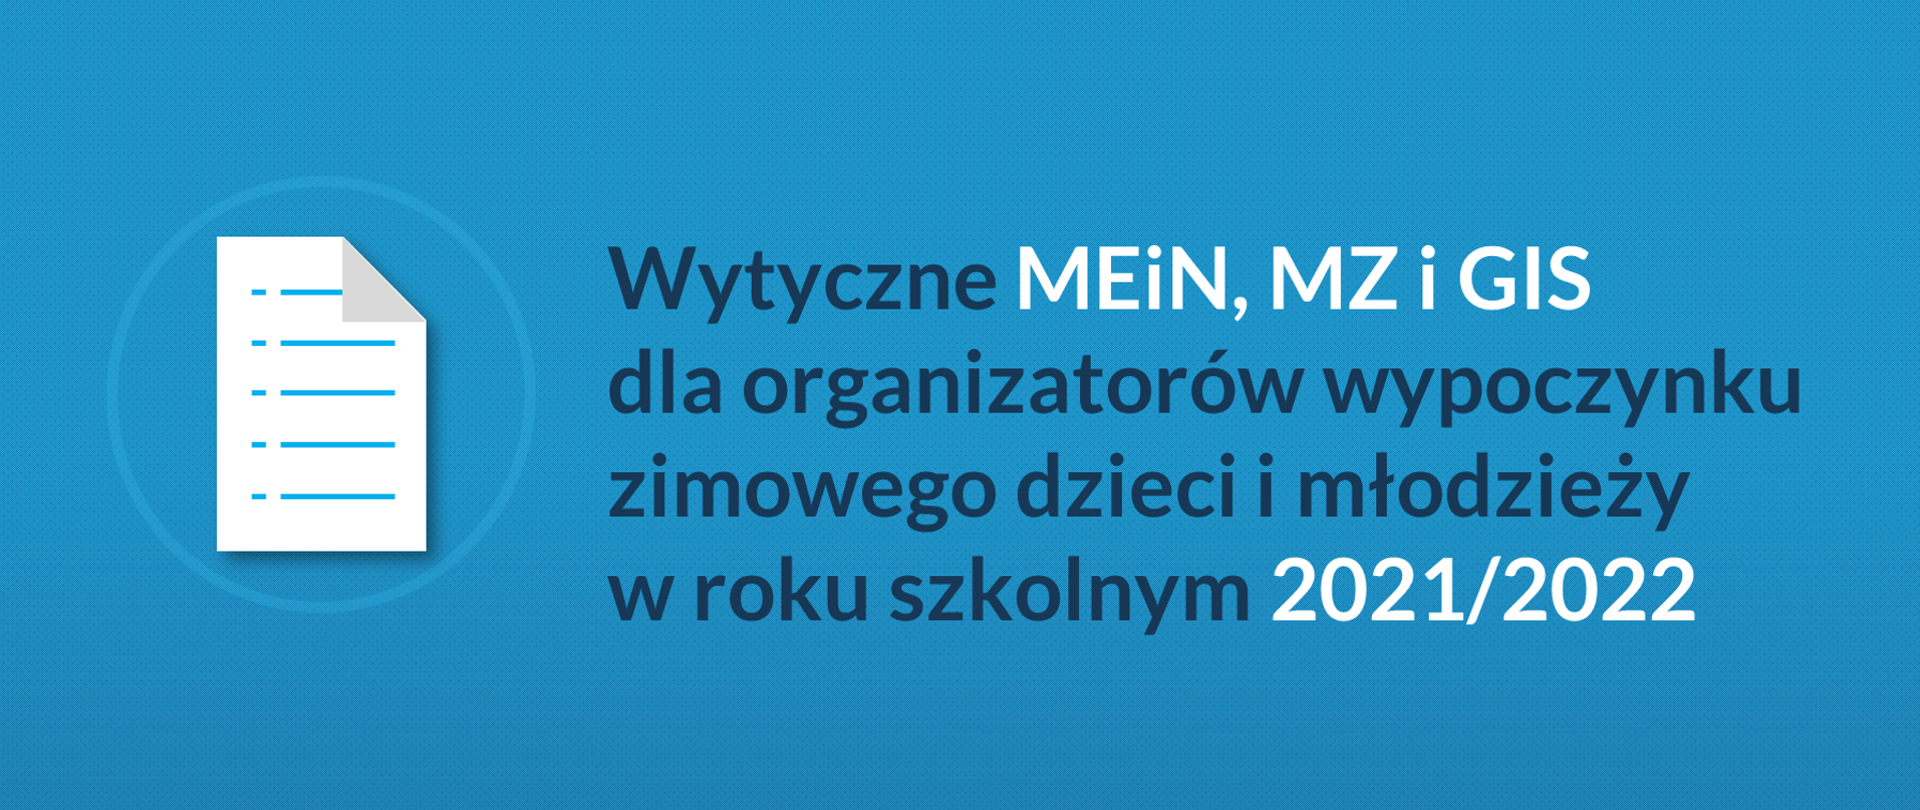 Na niebieskim tle po lewej stronie znajduje się ikona kartki z prawej strony tekst "Wytyczne MEiN, MZ i GIS dla organizatorów wypoczynku zimowego i młodzieży w roku szkolnym 2021/2022".